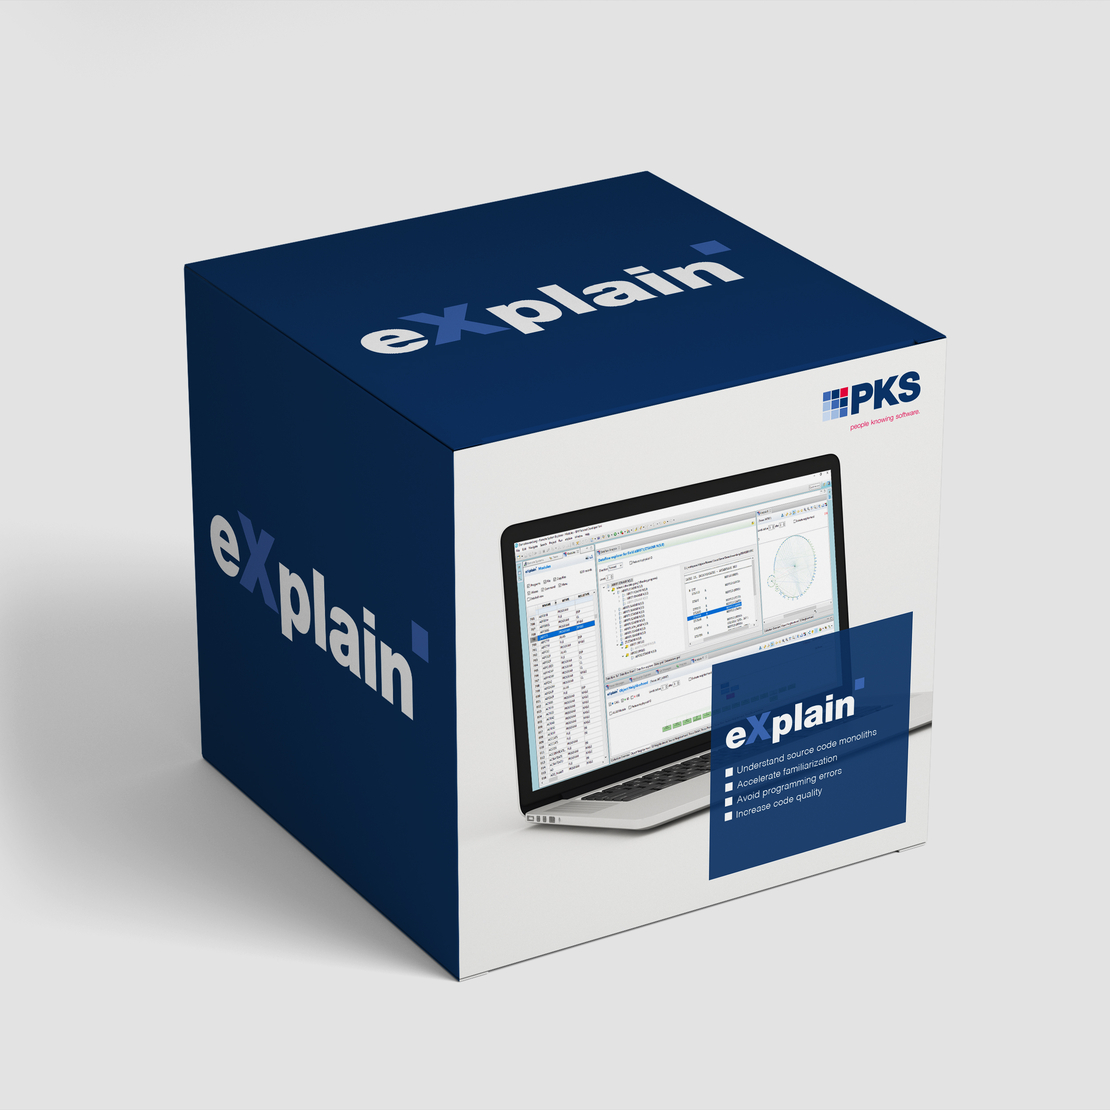 eXplain Product Box